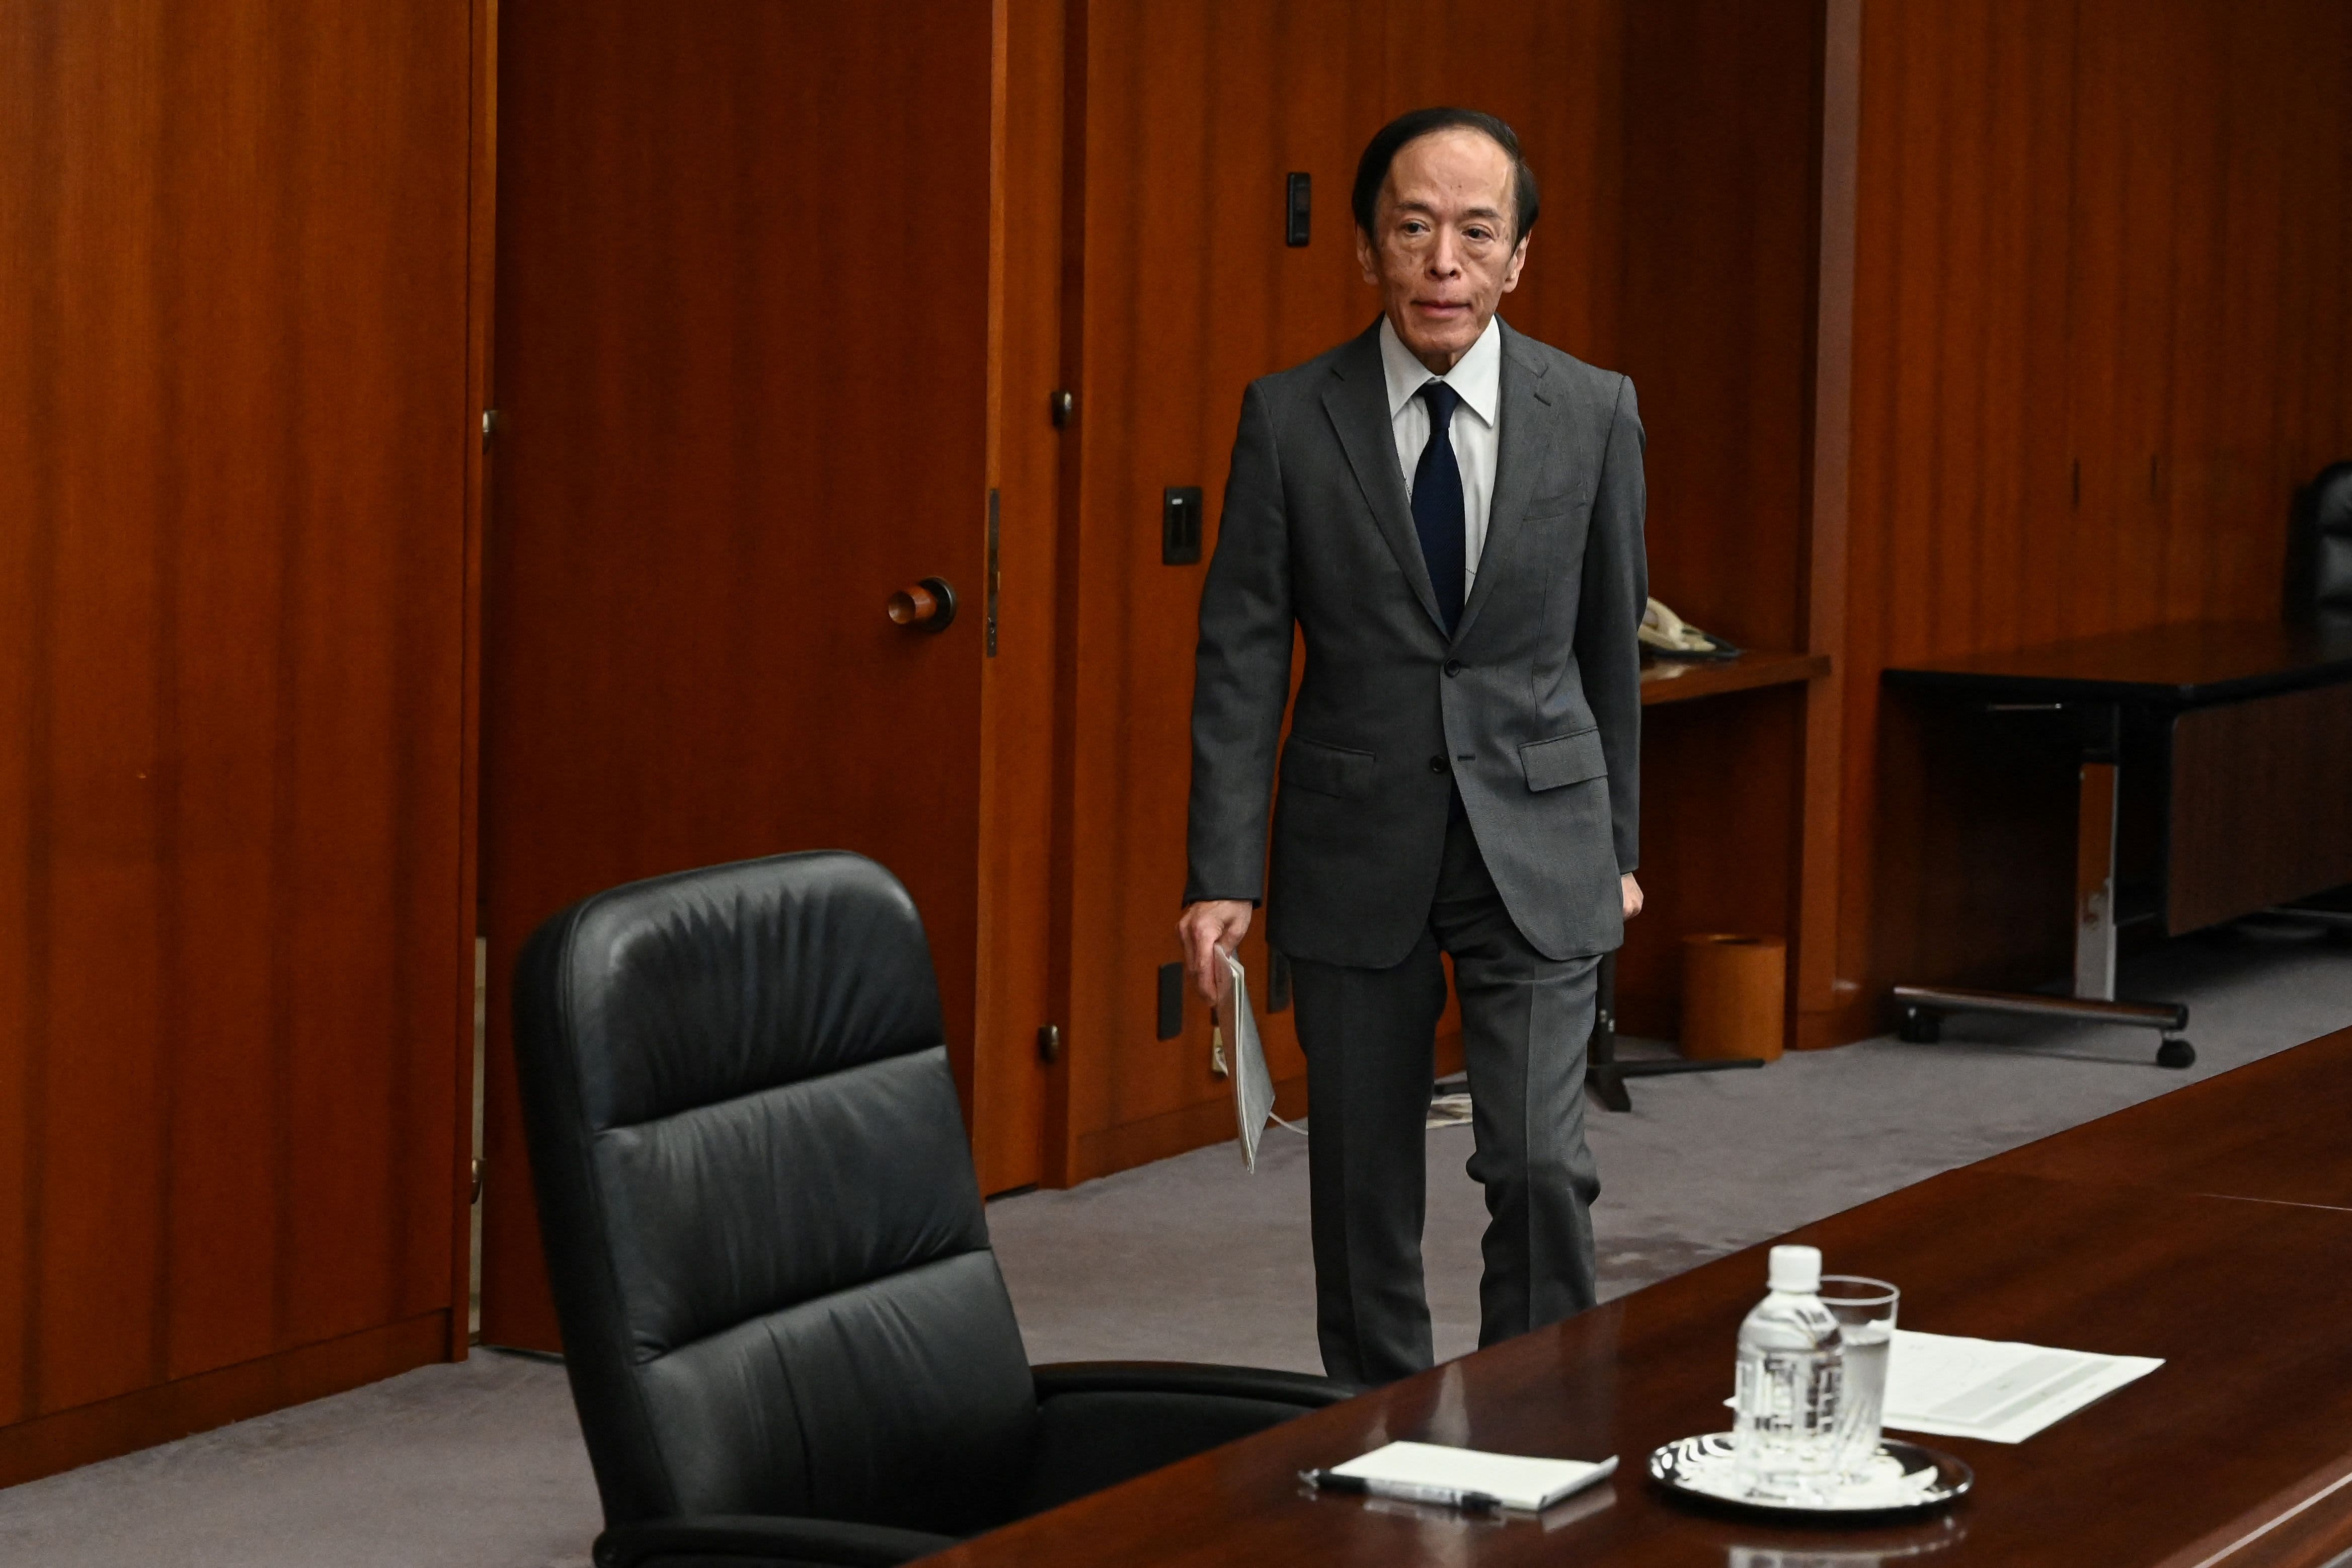 يقول محلل إن بنك اليابان المركزي كان “خاطئًا” فيما يتعلق بالتضخم